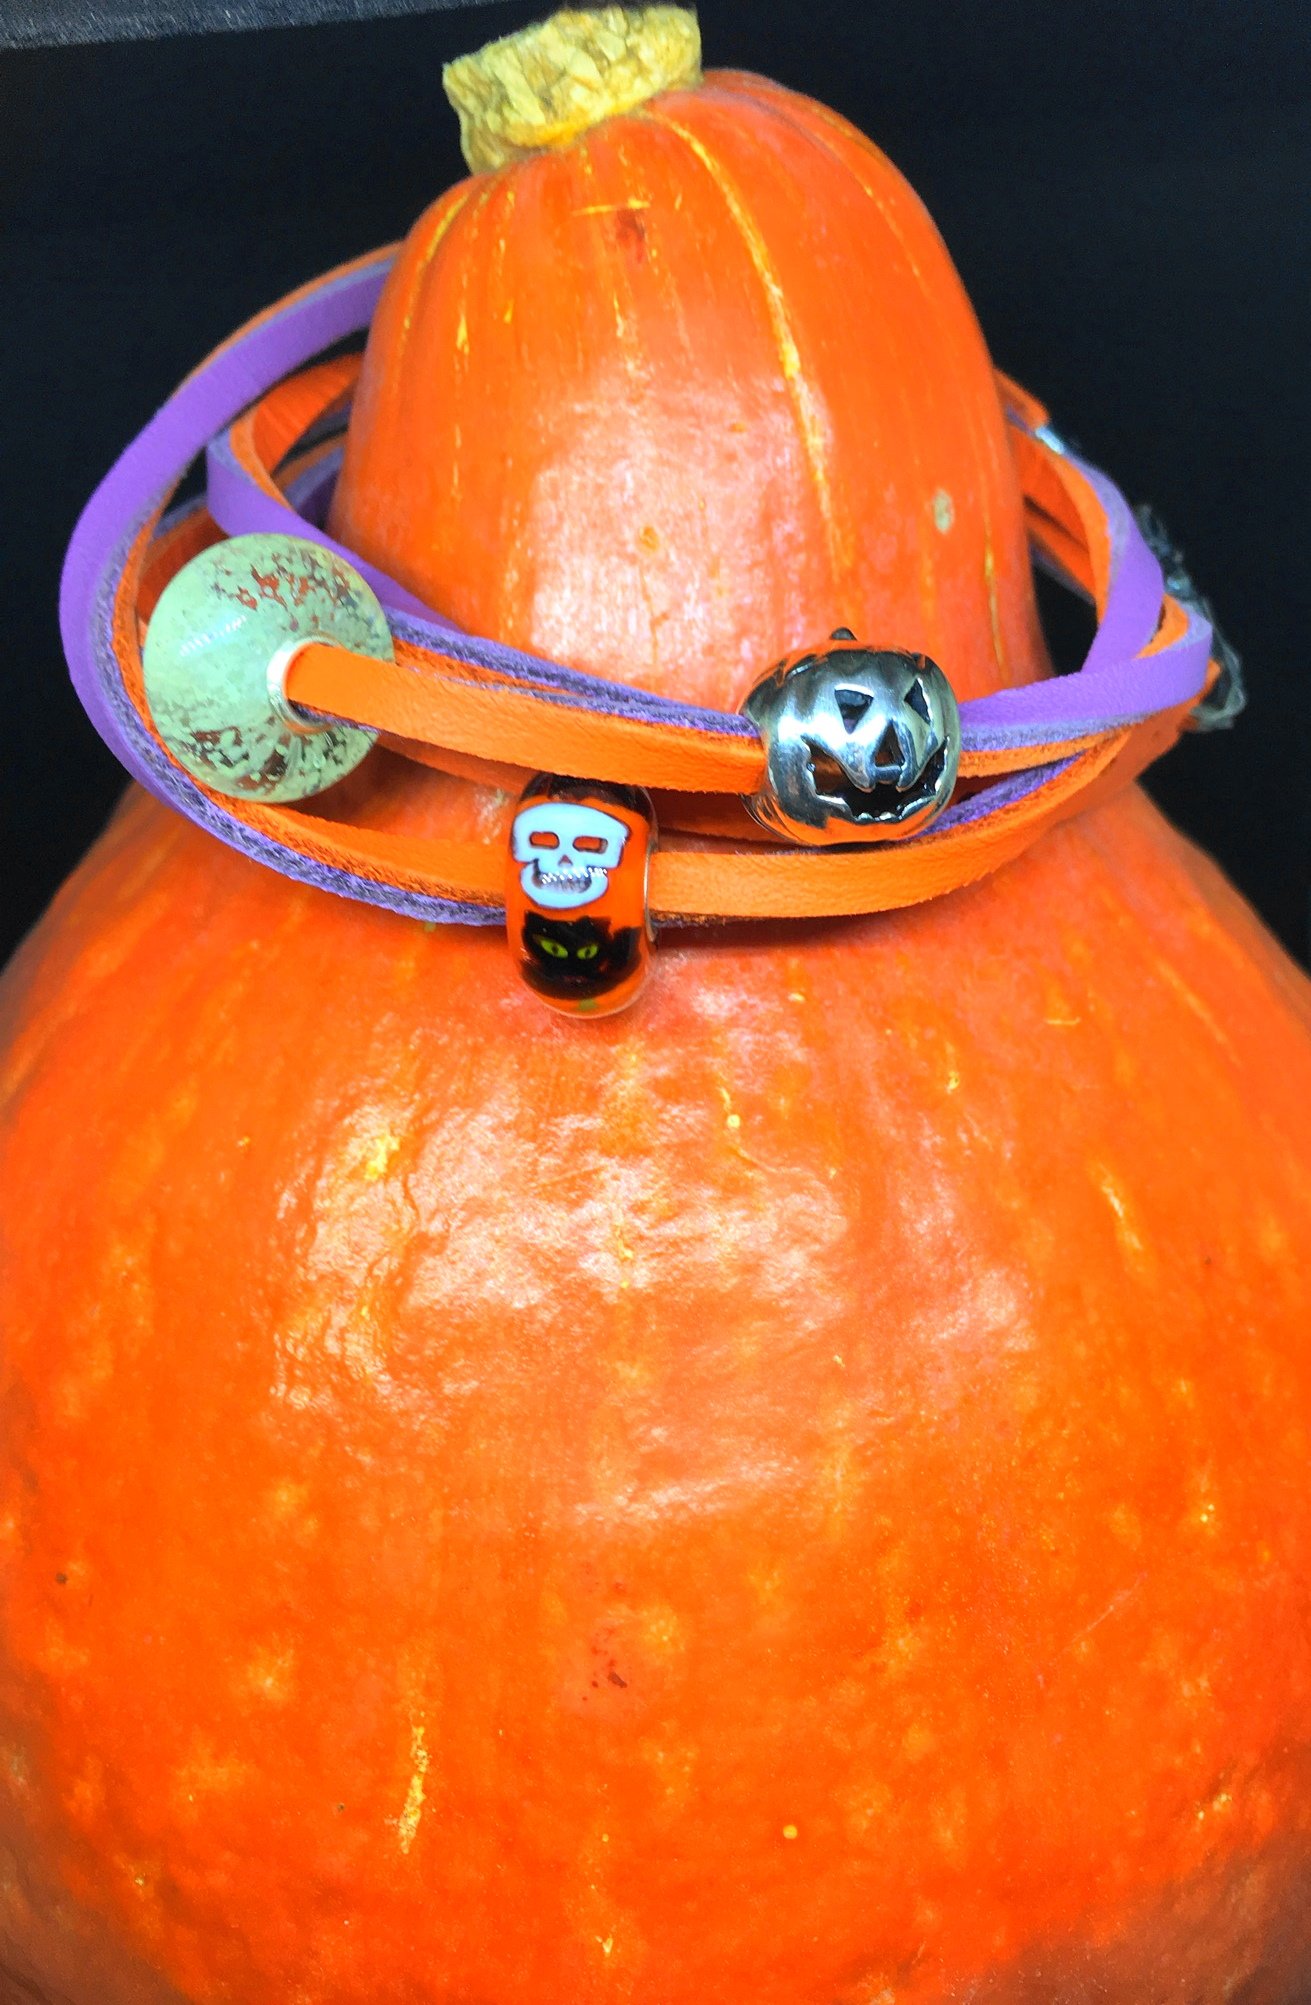 Heute zeige ich euch auf meinem Blog mein Halloween mit Trollbeads und gehe auf die wunderschönen Beads etwas näher mit hübschen Fotos ein